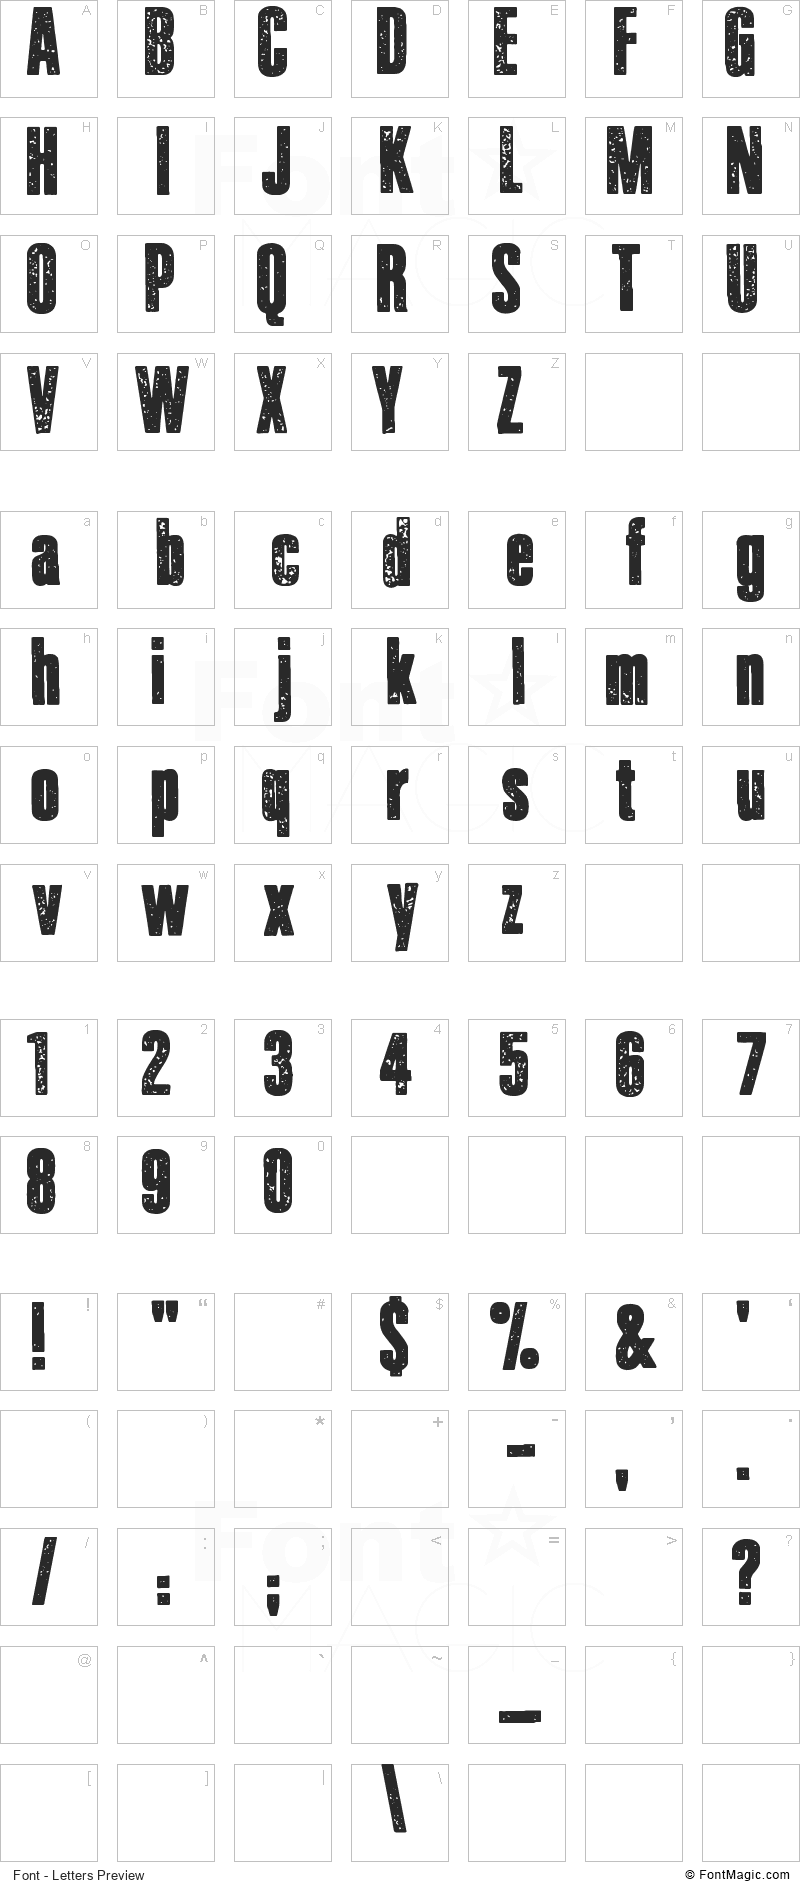 Journal du Soir Font - All Latters Preview Chart